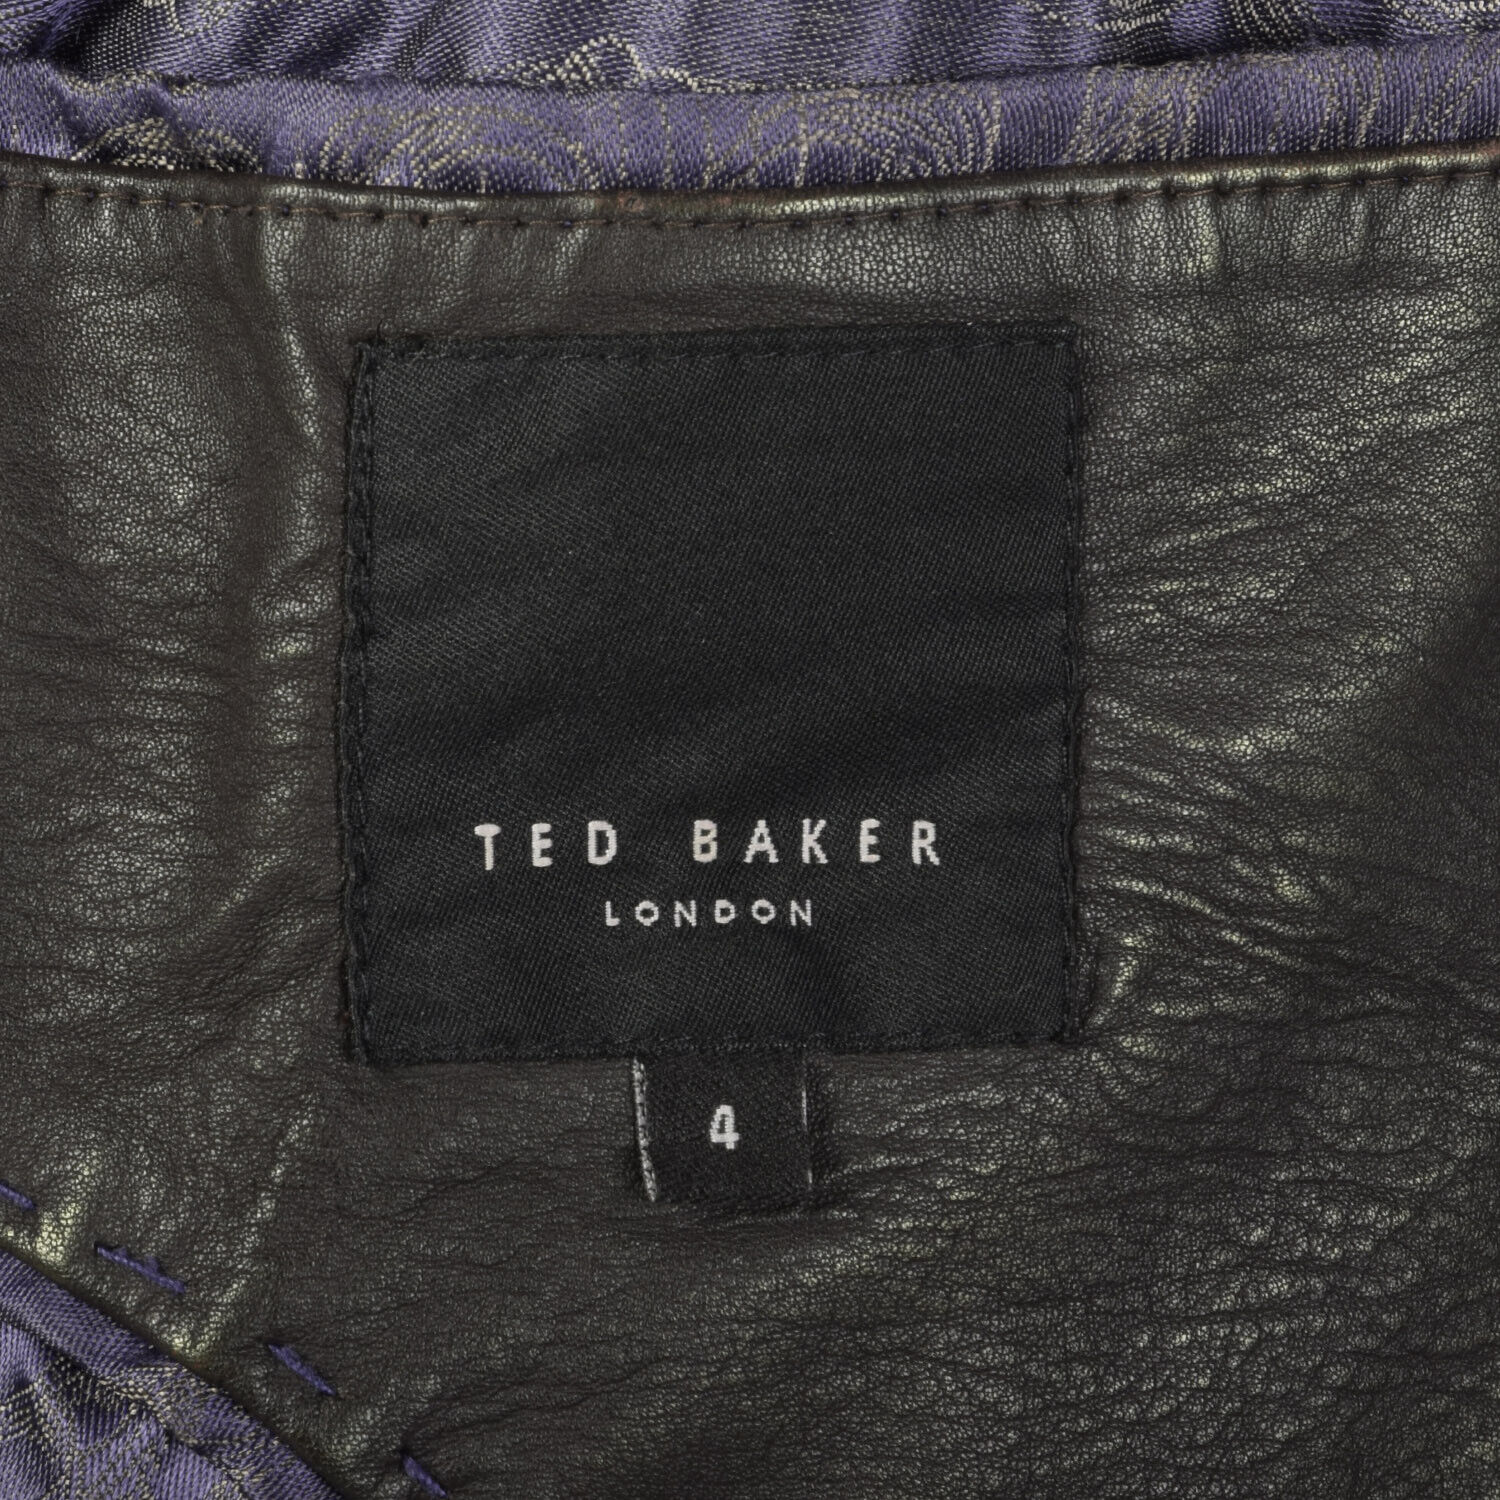 S Mens Ted BakerJacket Black Leather Cafe Racer M… - image 10